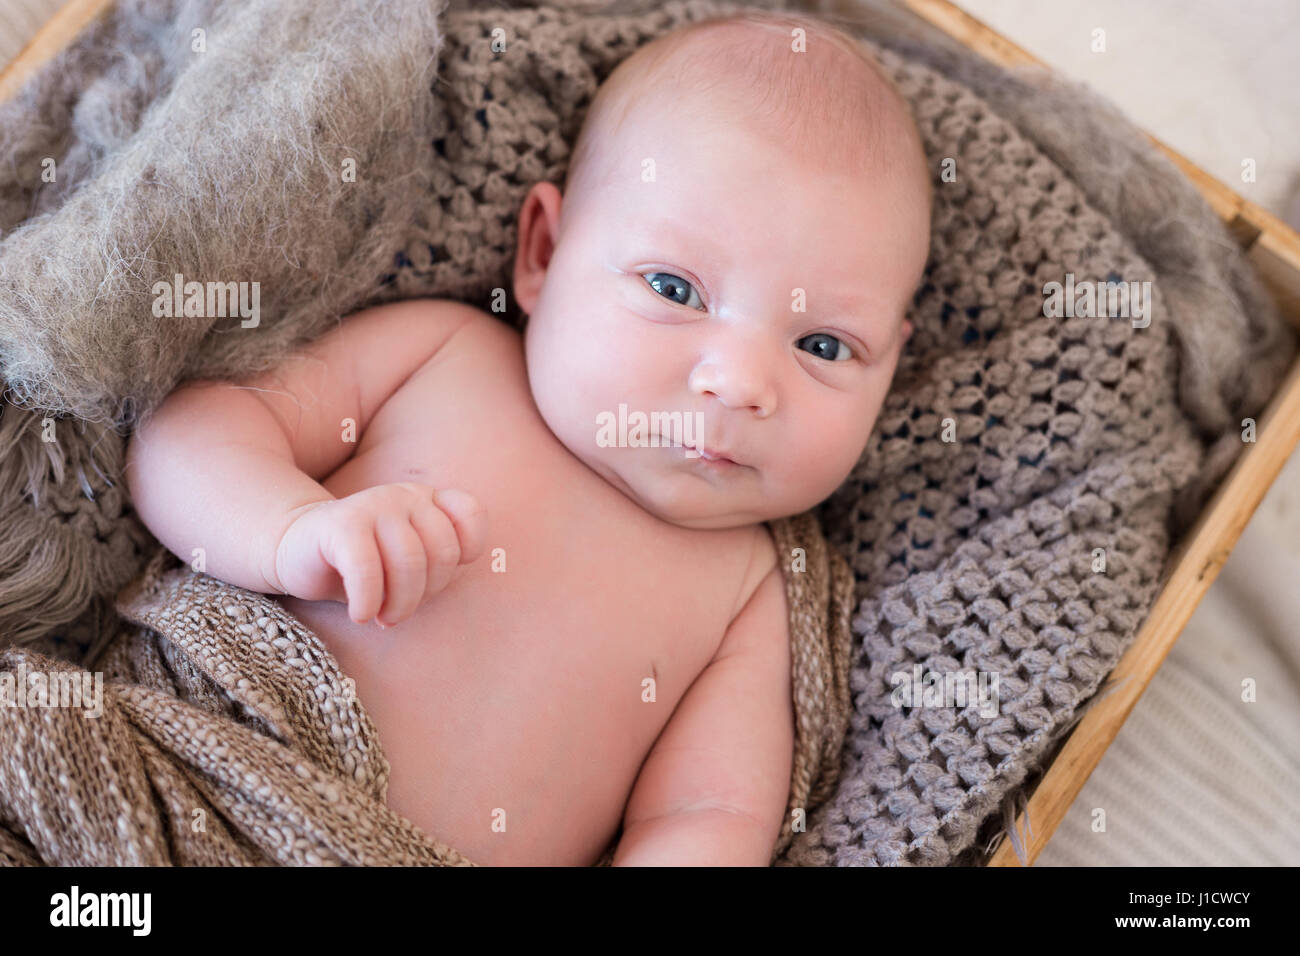 Neugeborenes Baby liegend in einer Holzkiste verpackt in gestrickte Schals und decken. Stockfoto